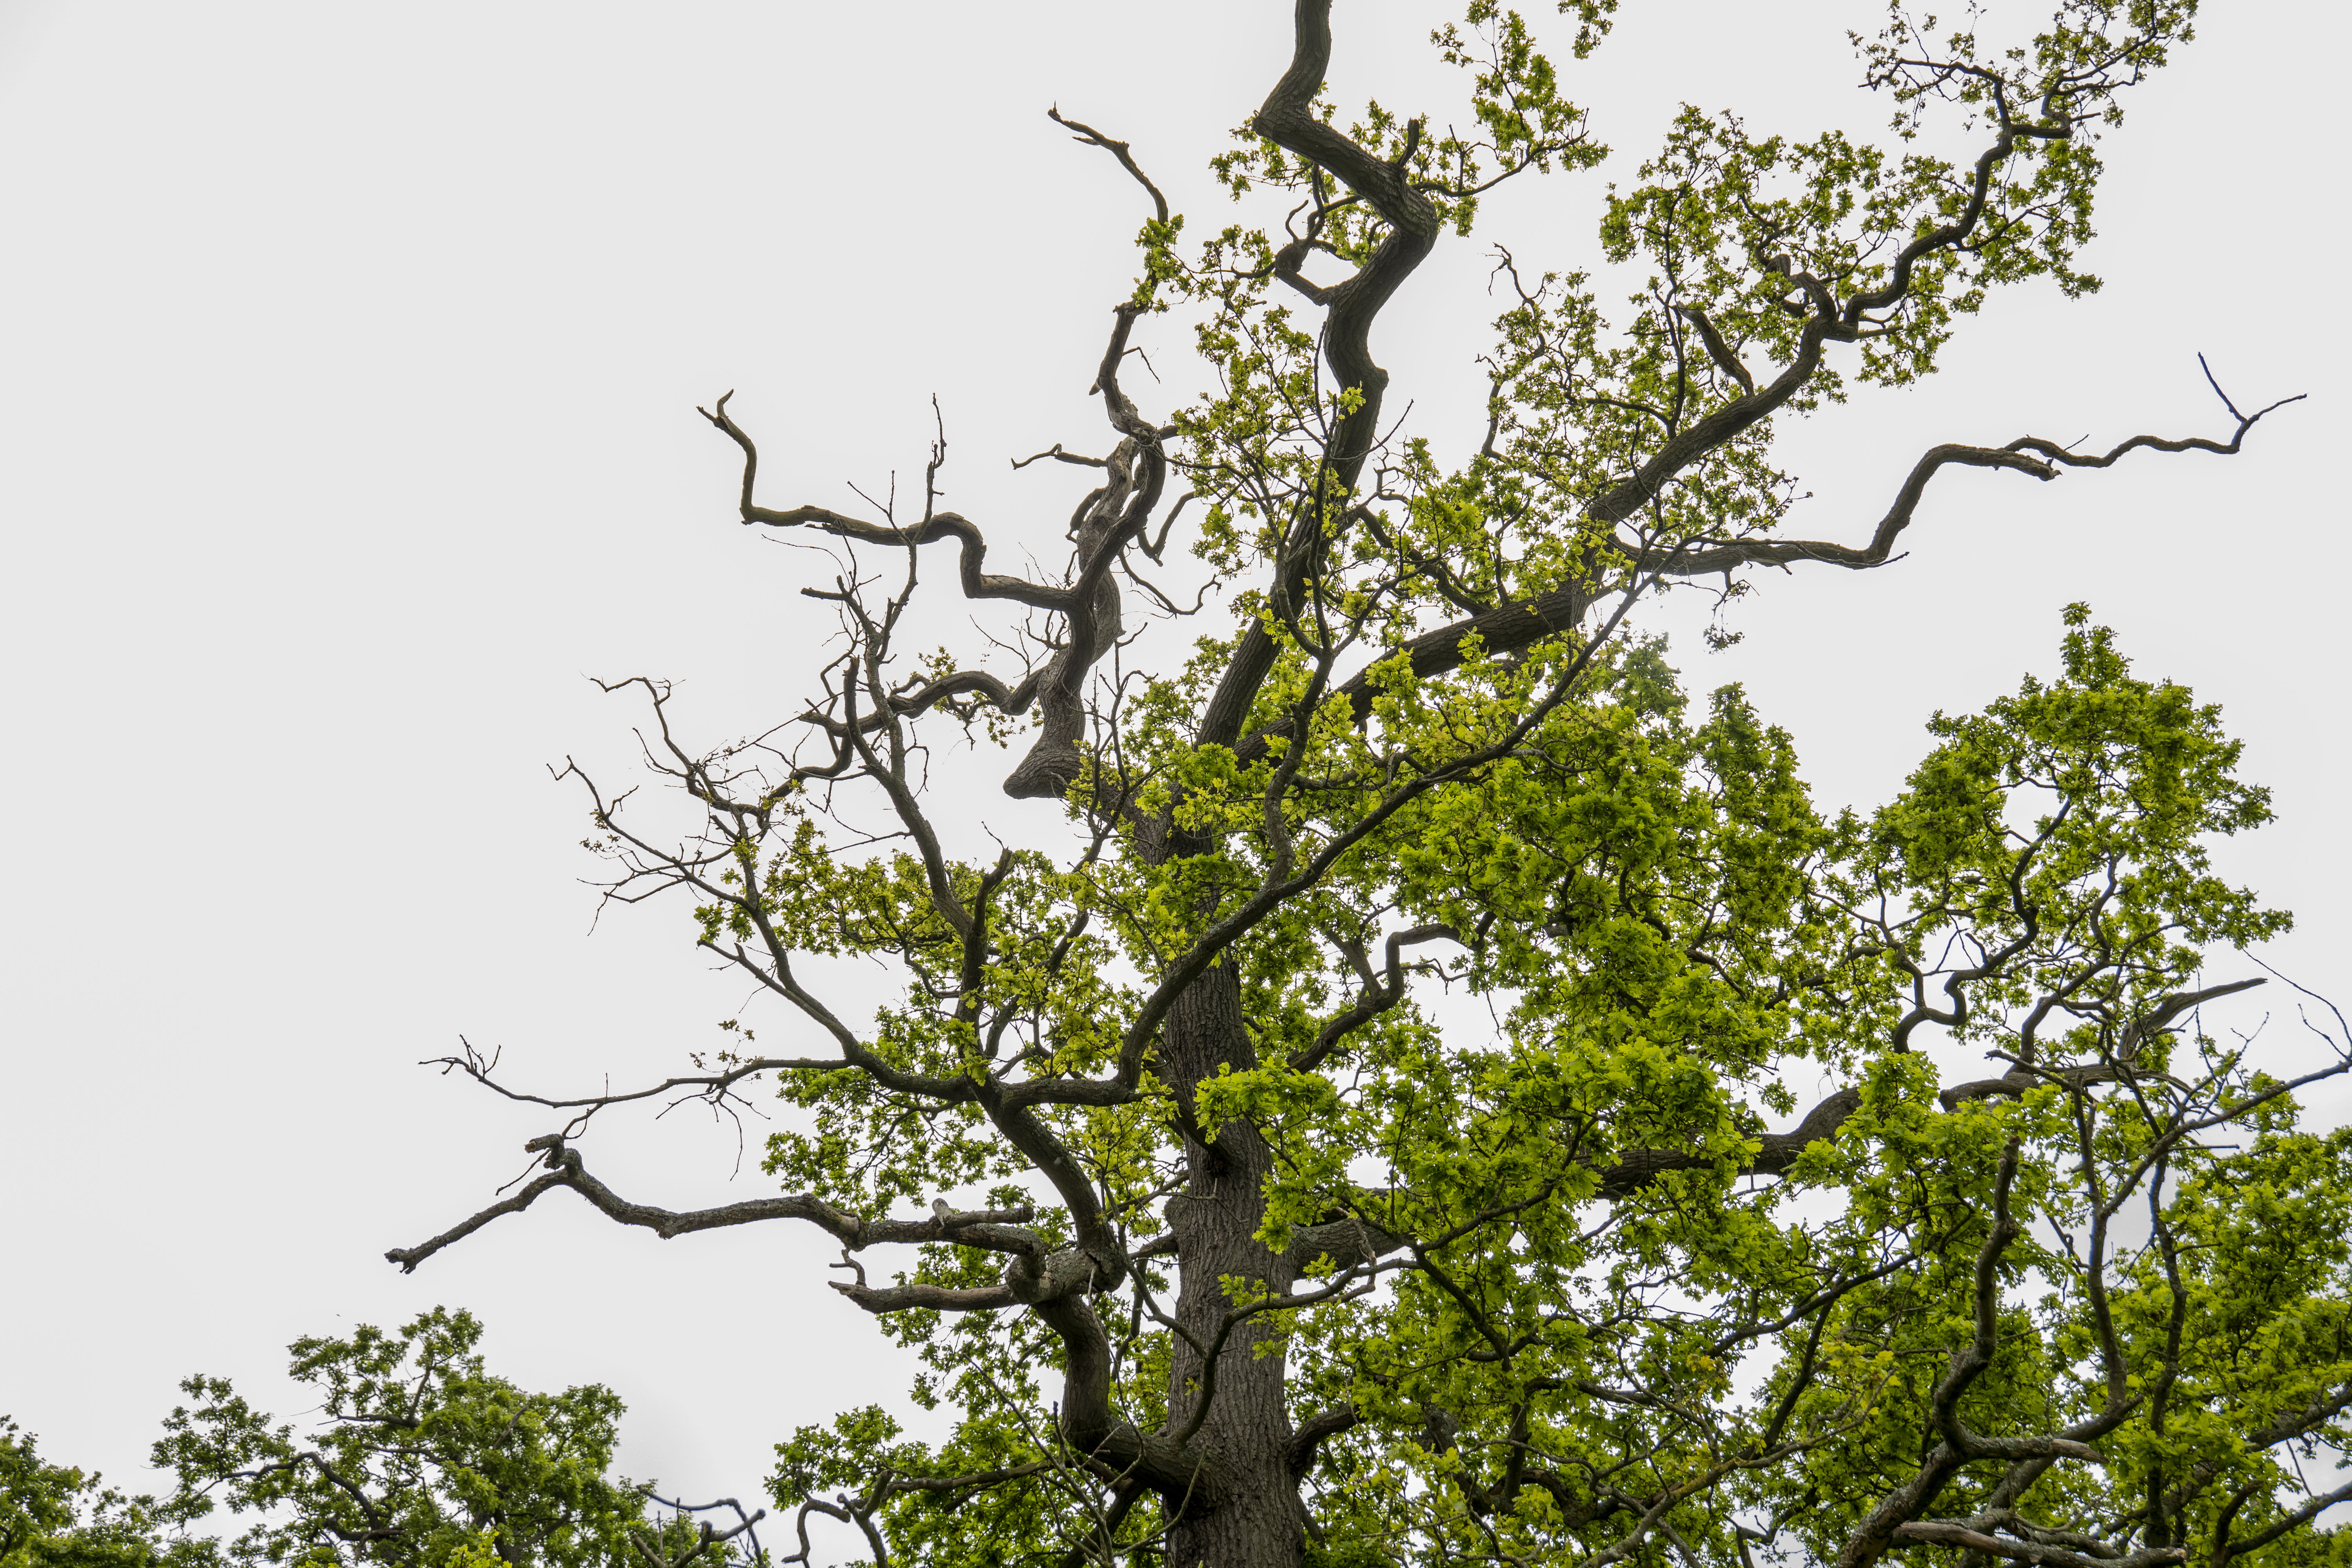 An oak tree has been defoliated along half of it's canopy by disease